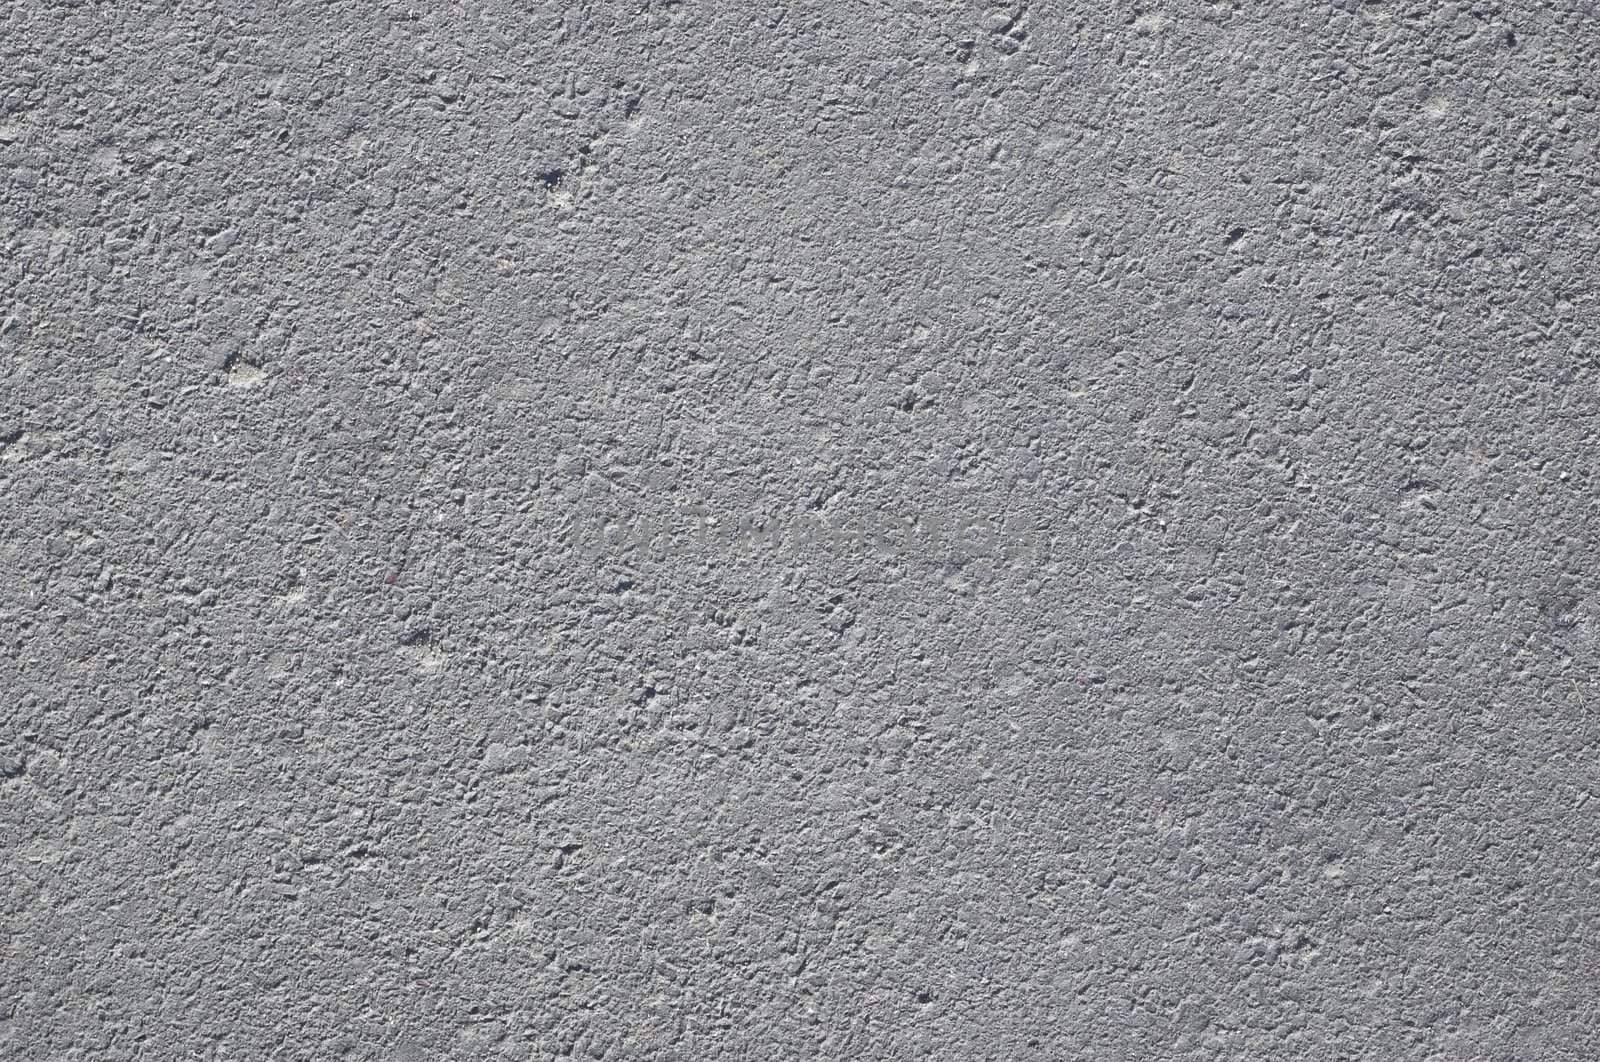 dusty asphalt grunge texture background #2